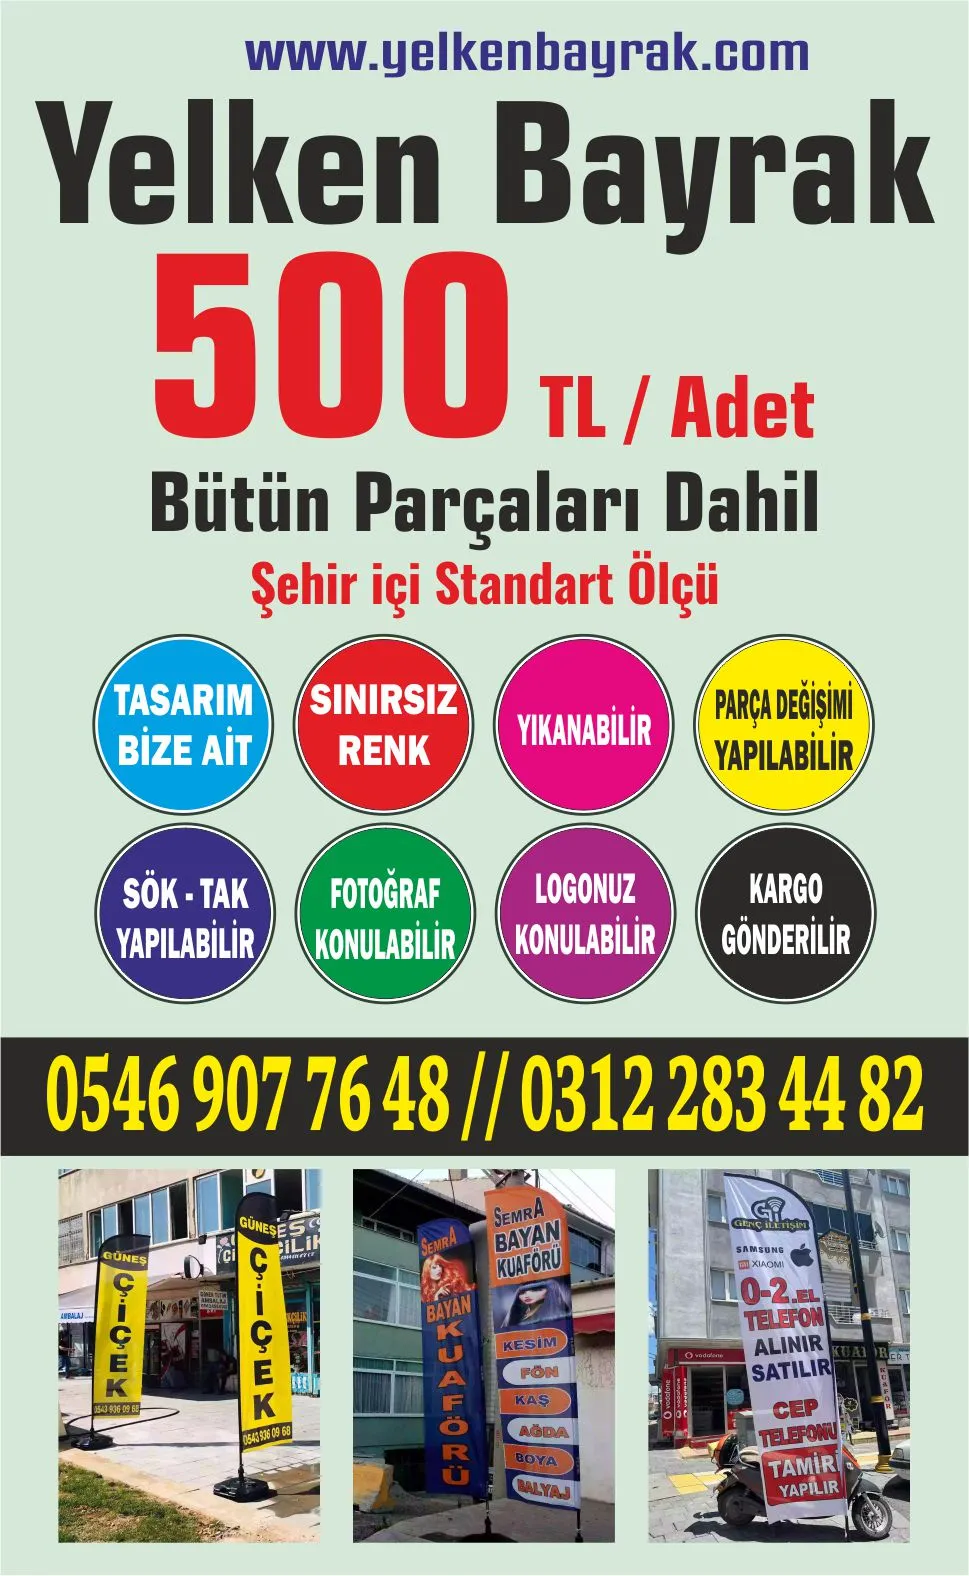 İstanbul Olta Bayrak Fiyatları, Olta Bayrak Fiyatları, Dubalı Bayrak Fiyatları, Plaj Bayrağı Fiyatları, Yolbayrağı Fiyatları